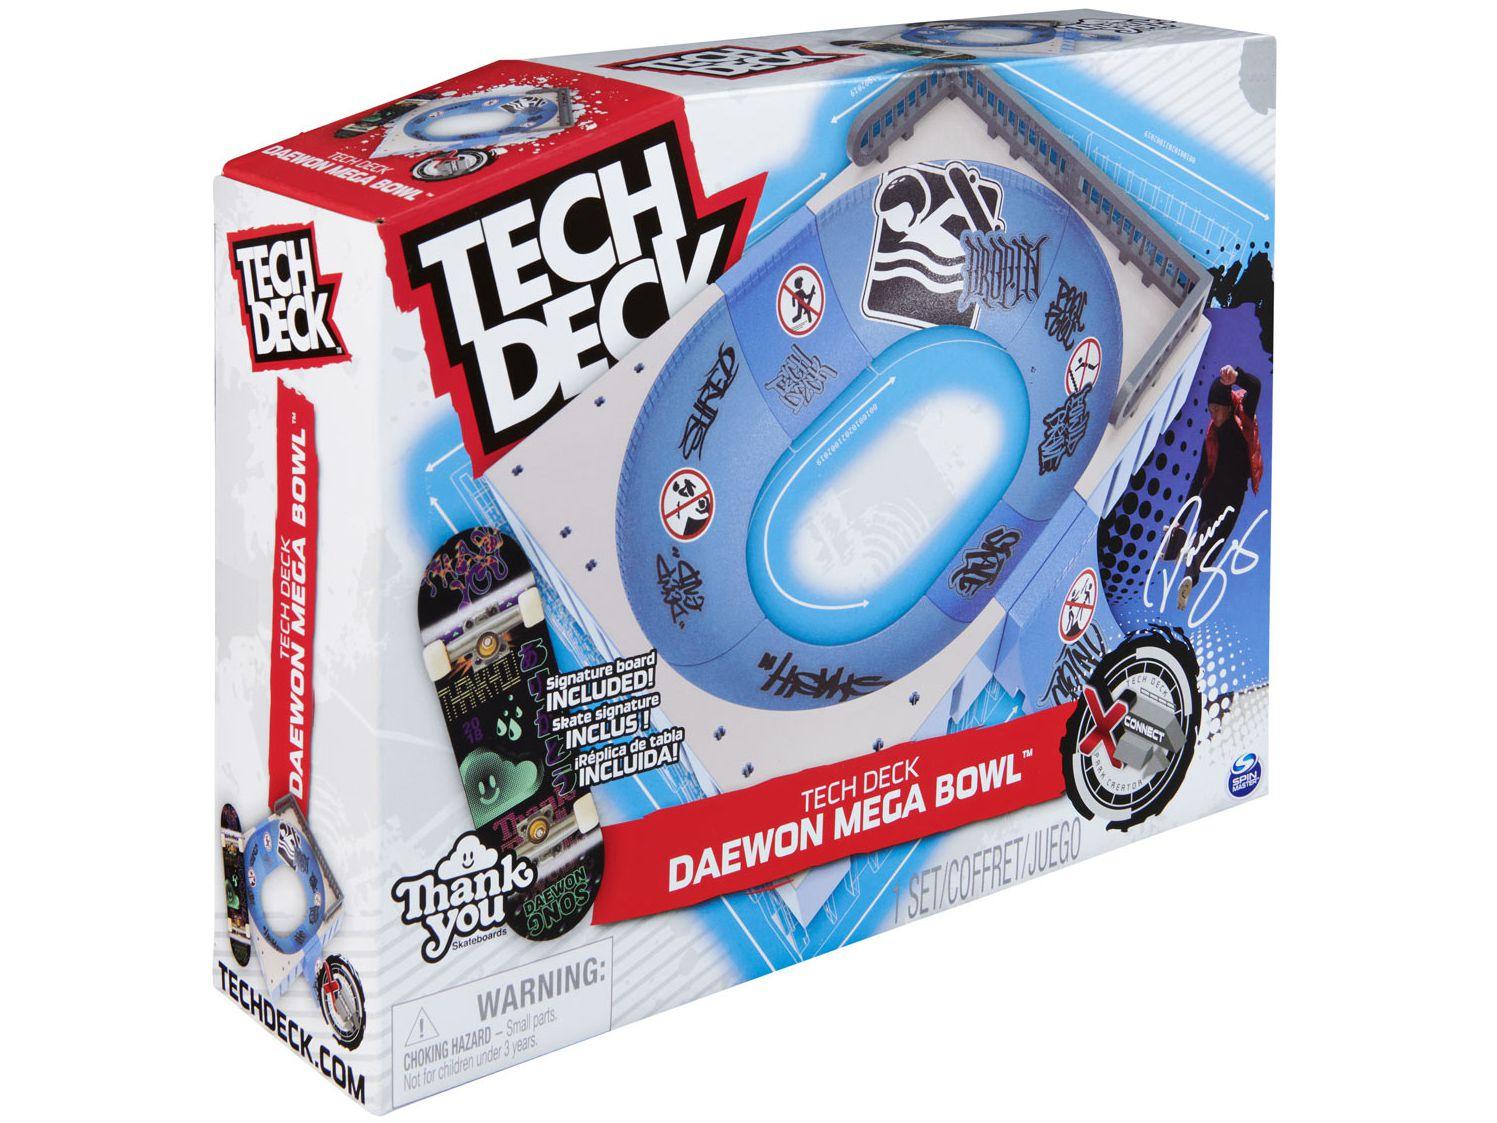 Skate de Dedo Tech Deck - Sunny - MP Brinquedos